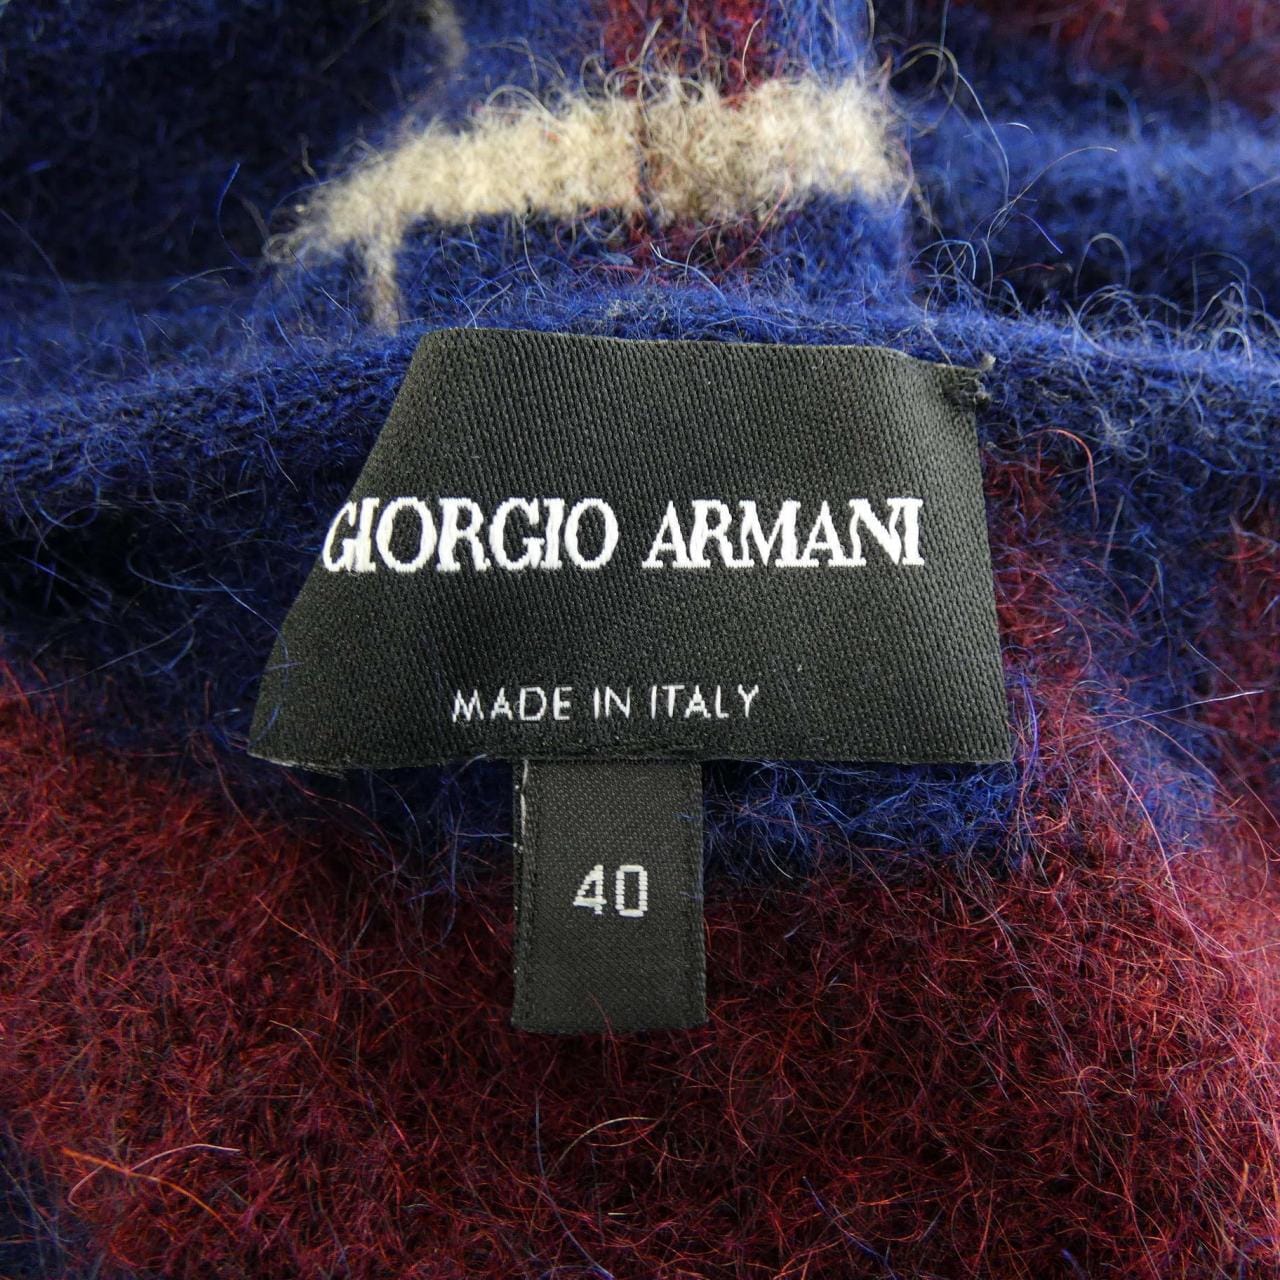 Giorgio Armani GIORGIO ARMANI针织衫